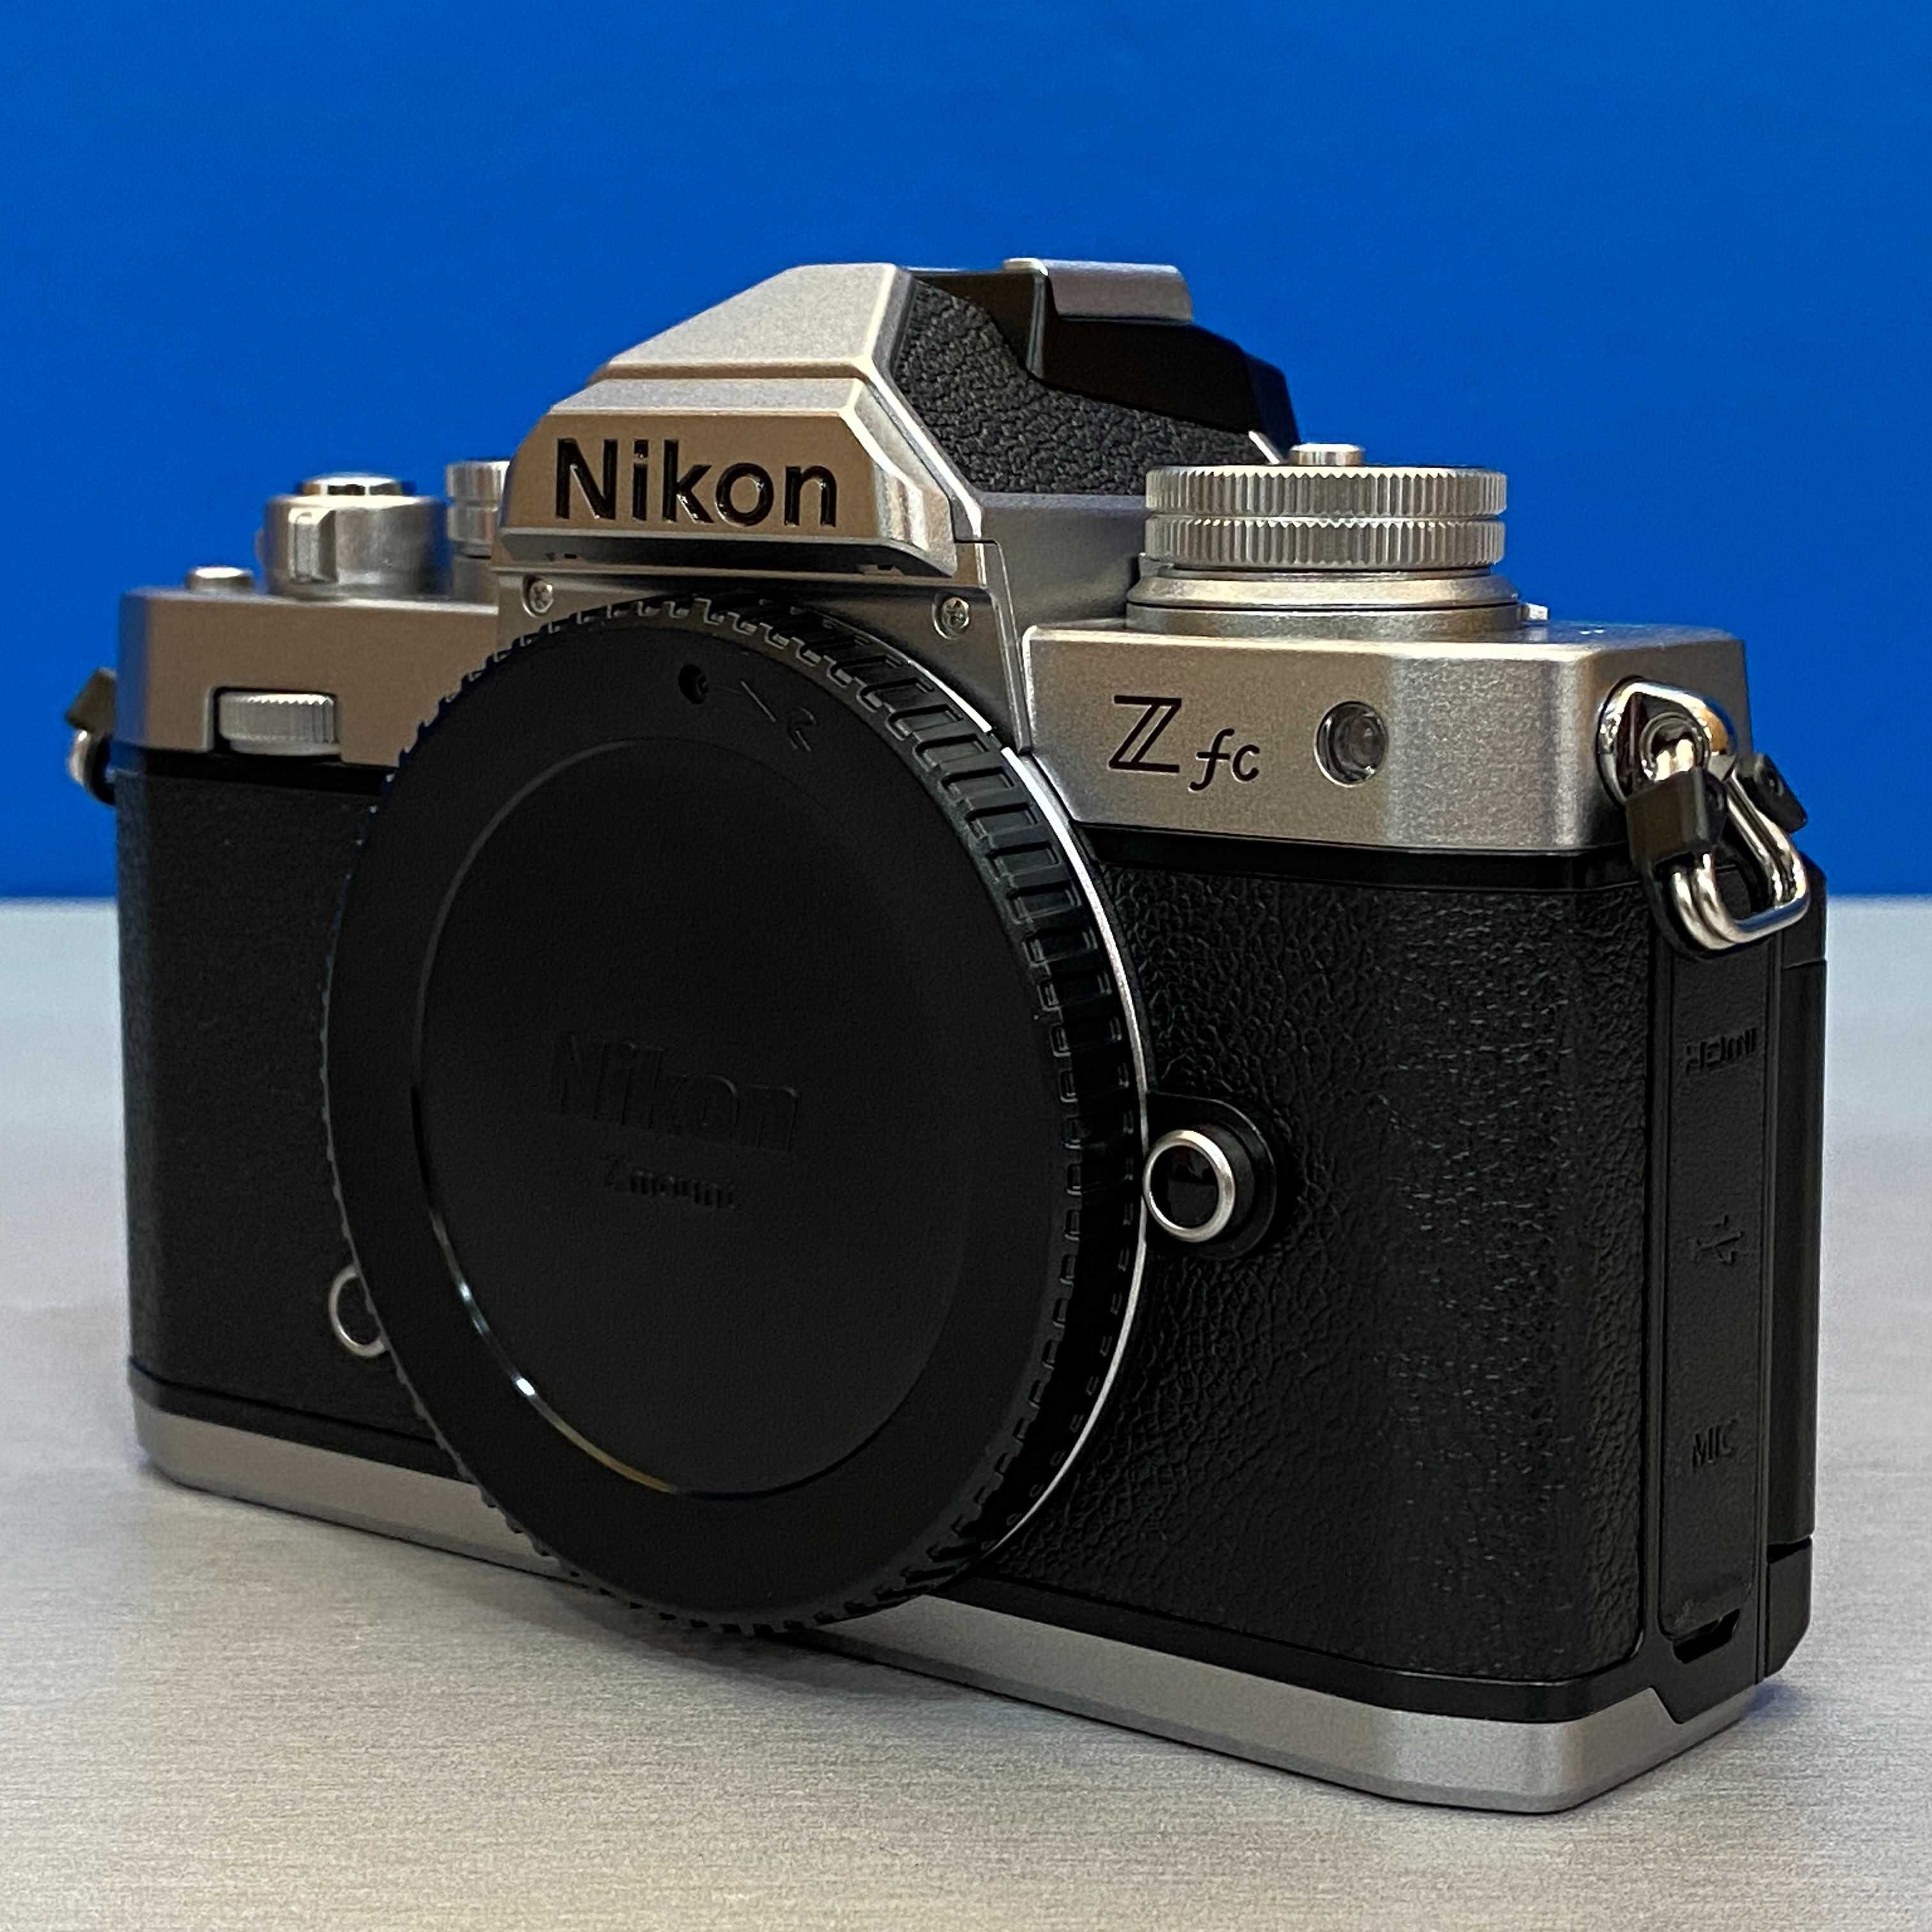 Nikon Z fc (Corpo) - 20.9MP - 3 ANOS DE GARANTIA